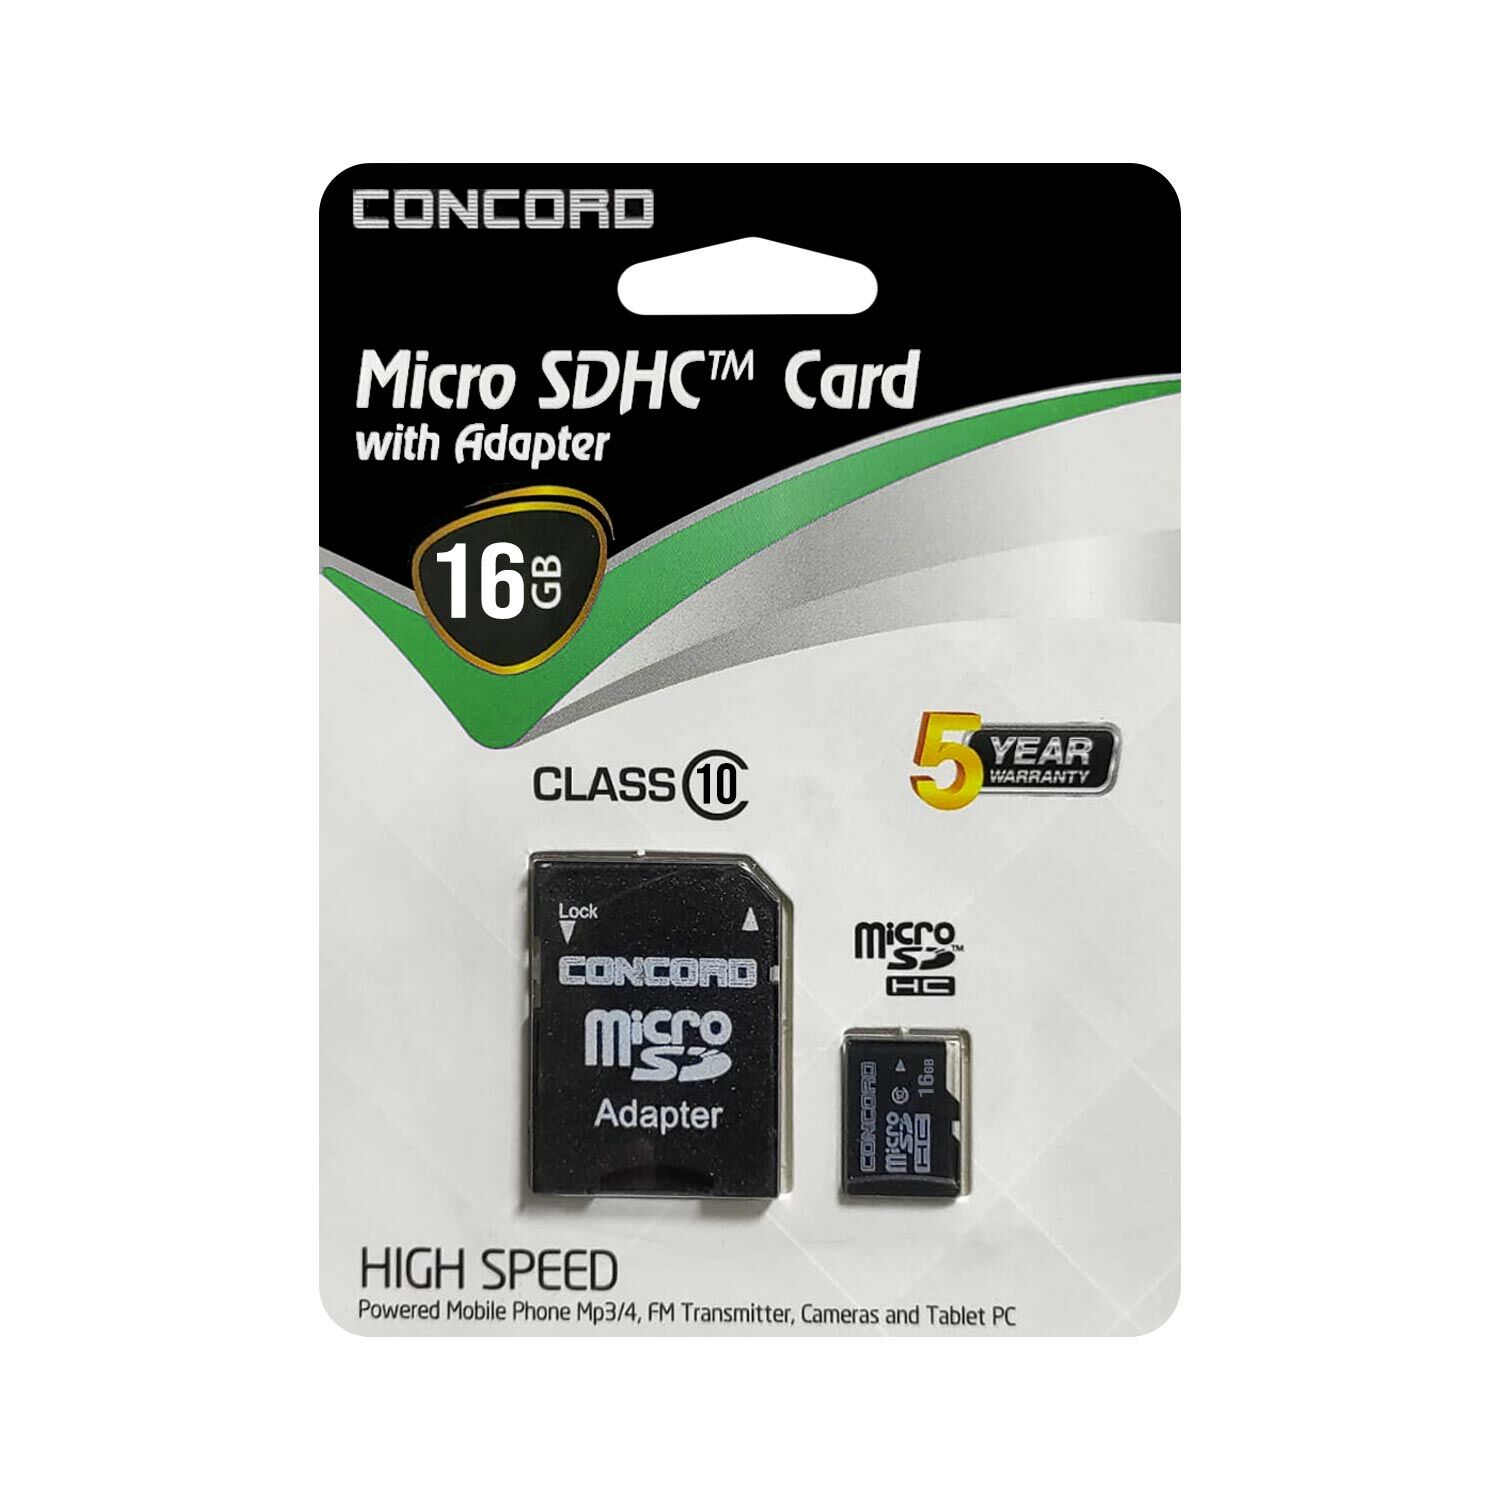 HAFIZA KARTI 16GB MİCRO SD CLASS10 CONCORD C-M16